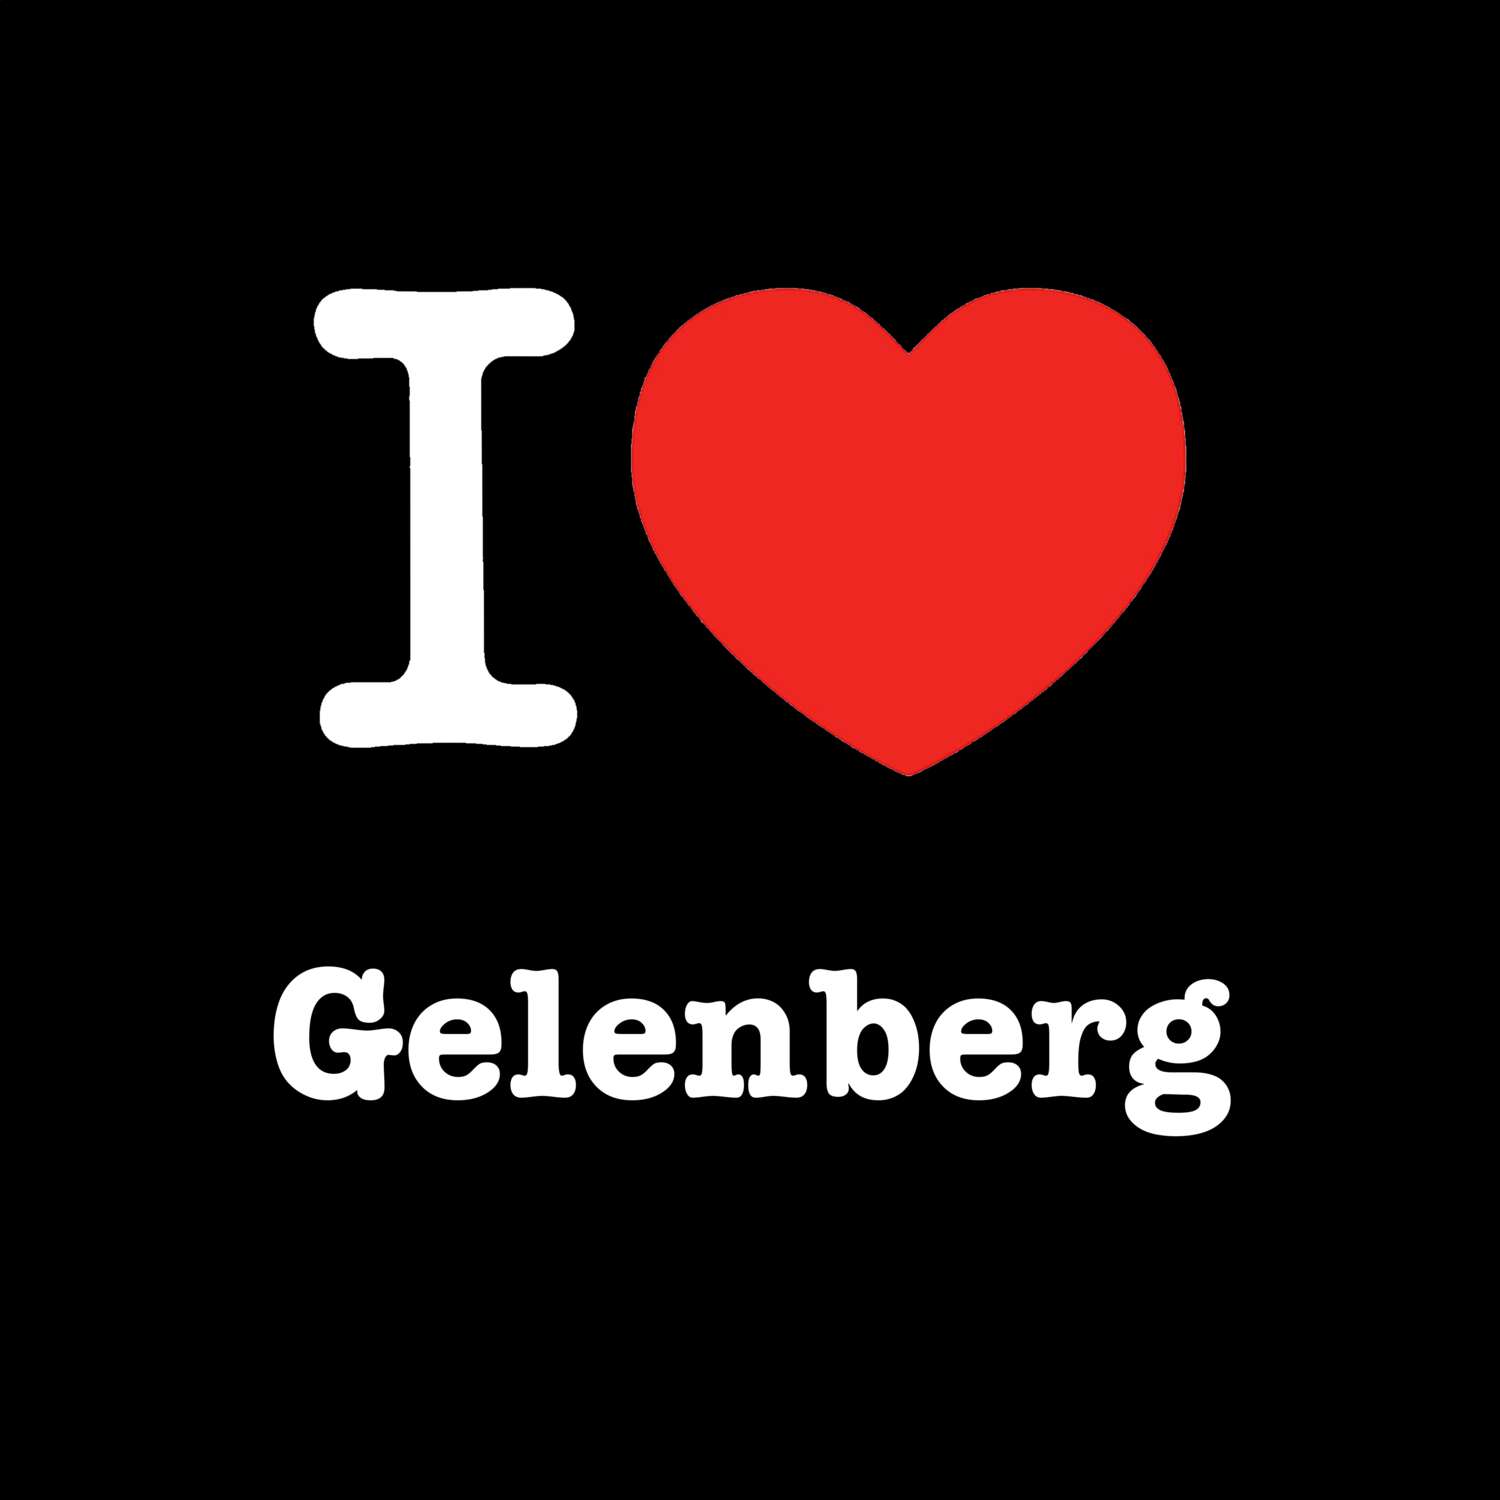 Gelenberg T-Shirt »I love«